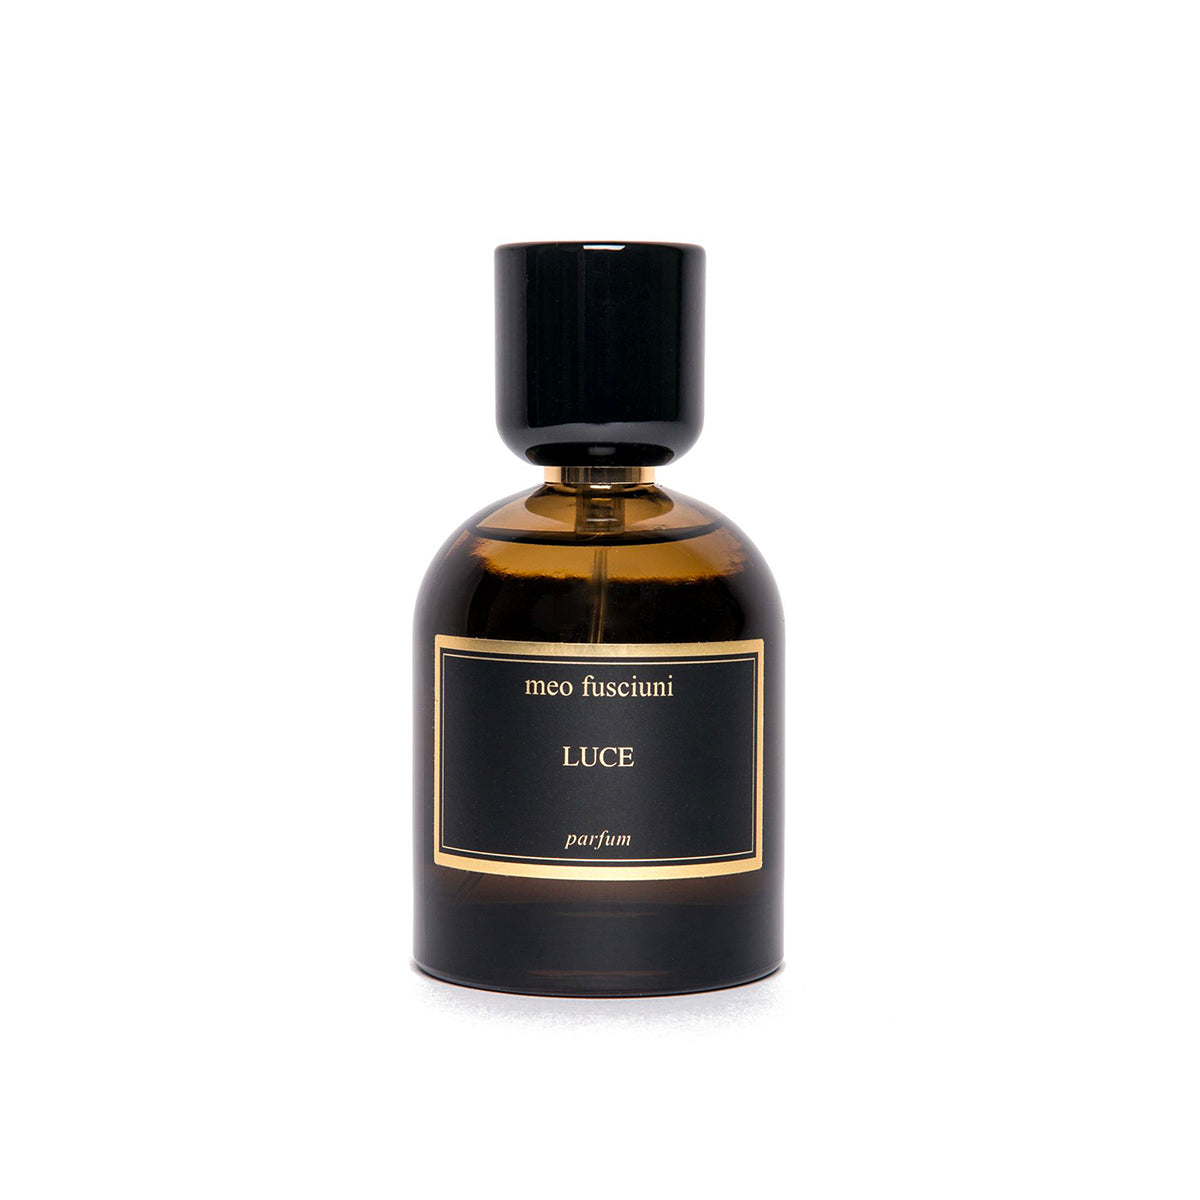 Luce by Meo Fusciuni at Indigo Perfumery